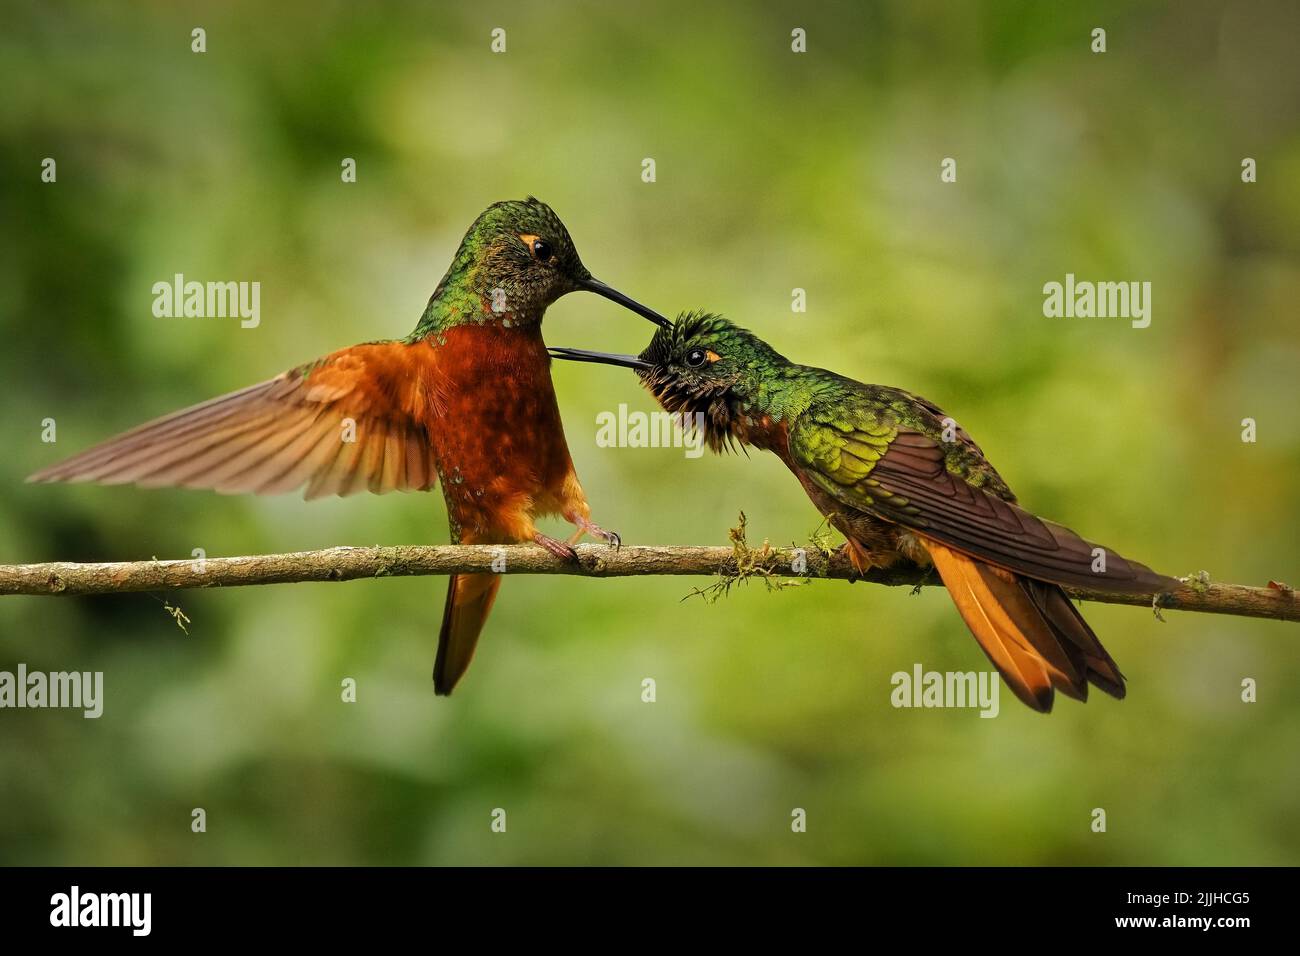 Coronet de castaño (Boissonneaua matthewsii), hermoso colibrí verde y rojo. Dos colibríes pequeños luchando en una rama con fondo verde Foto de stock